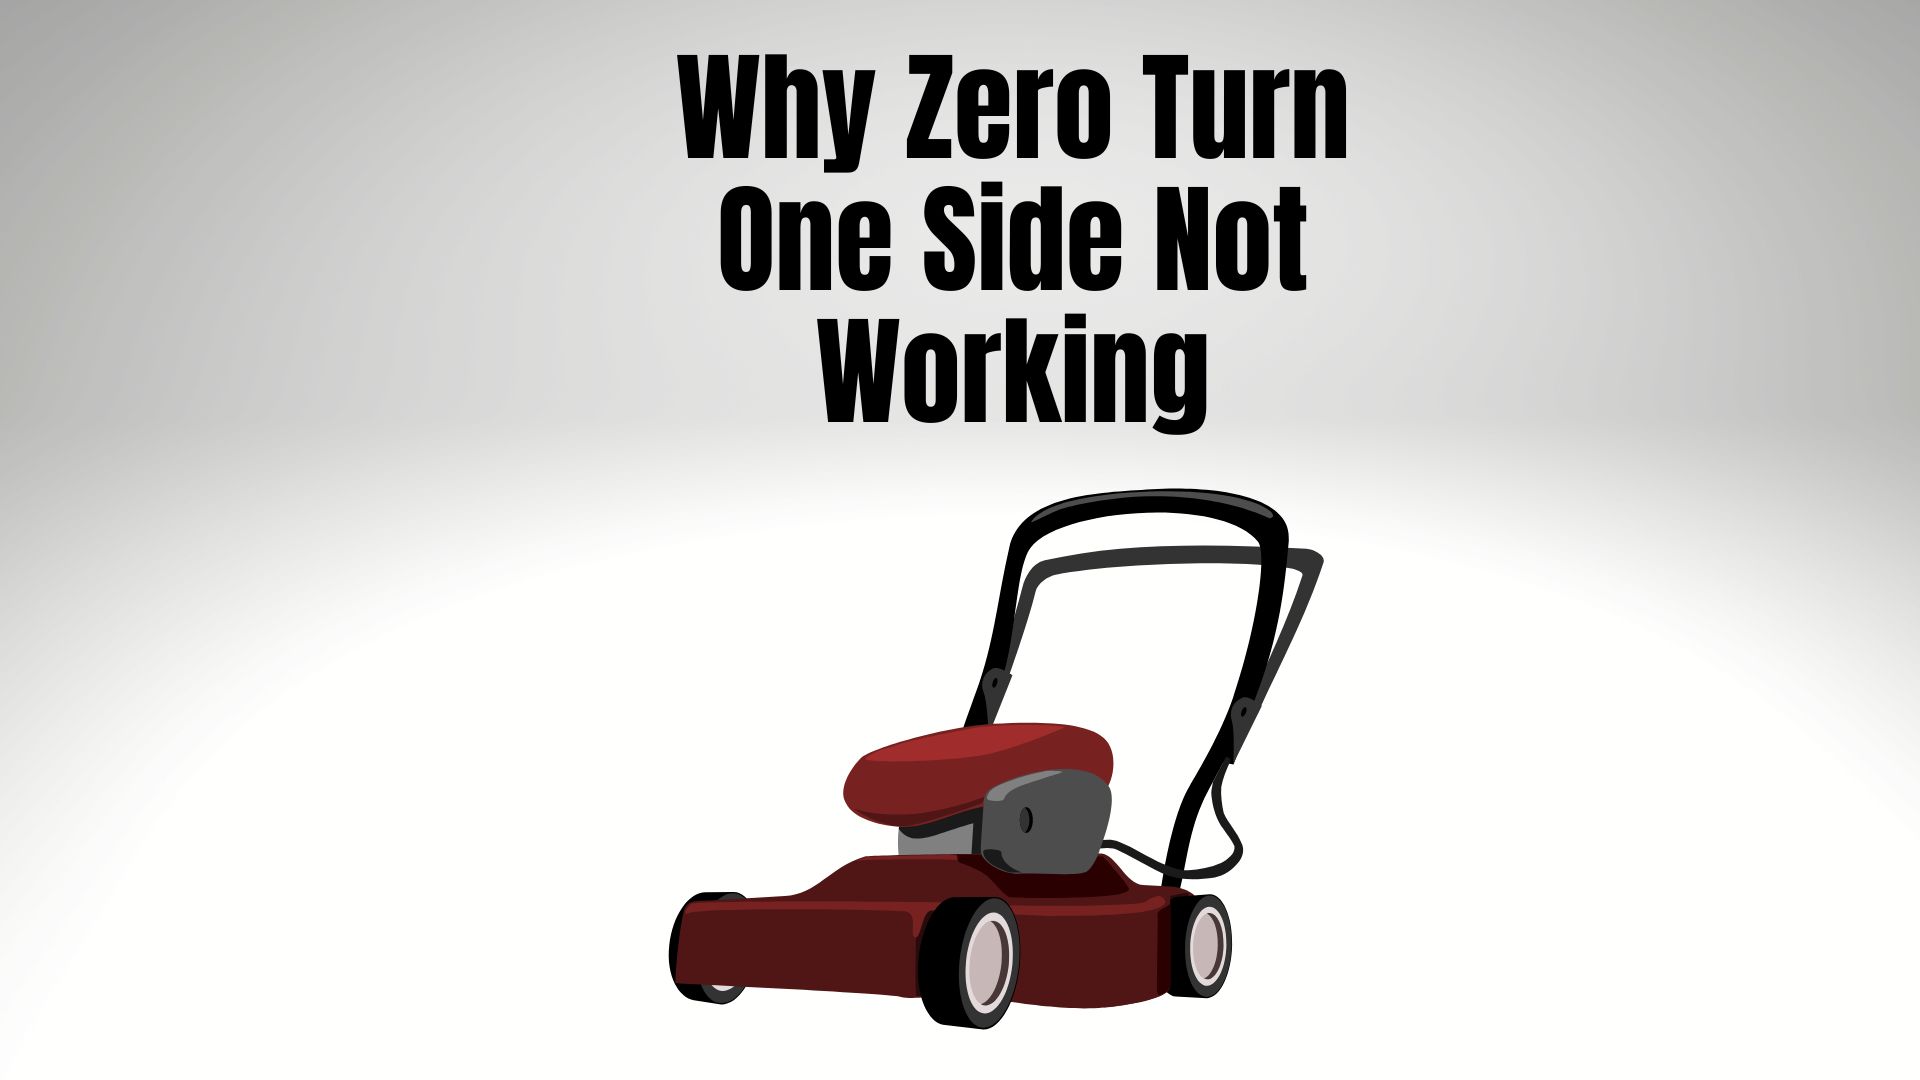 Zero Turn mower one side not working